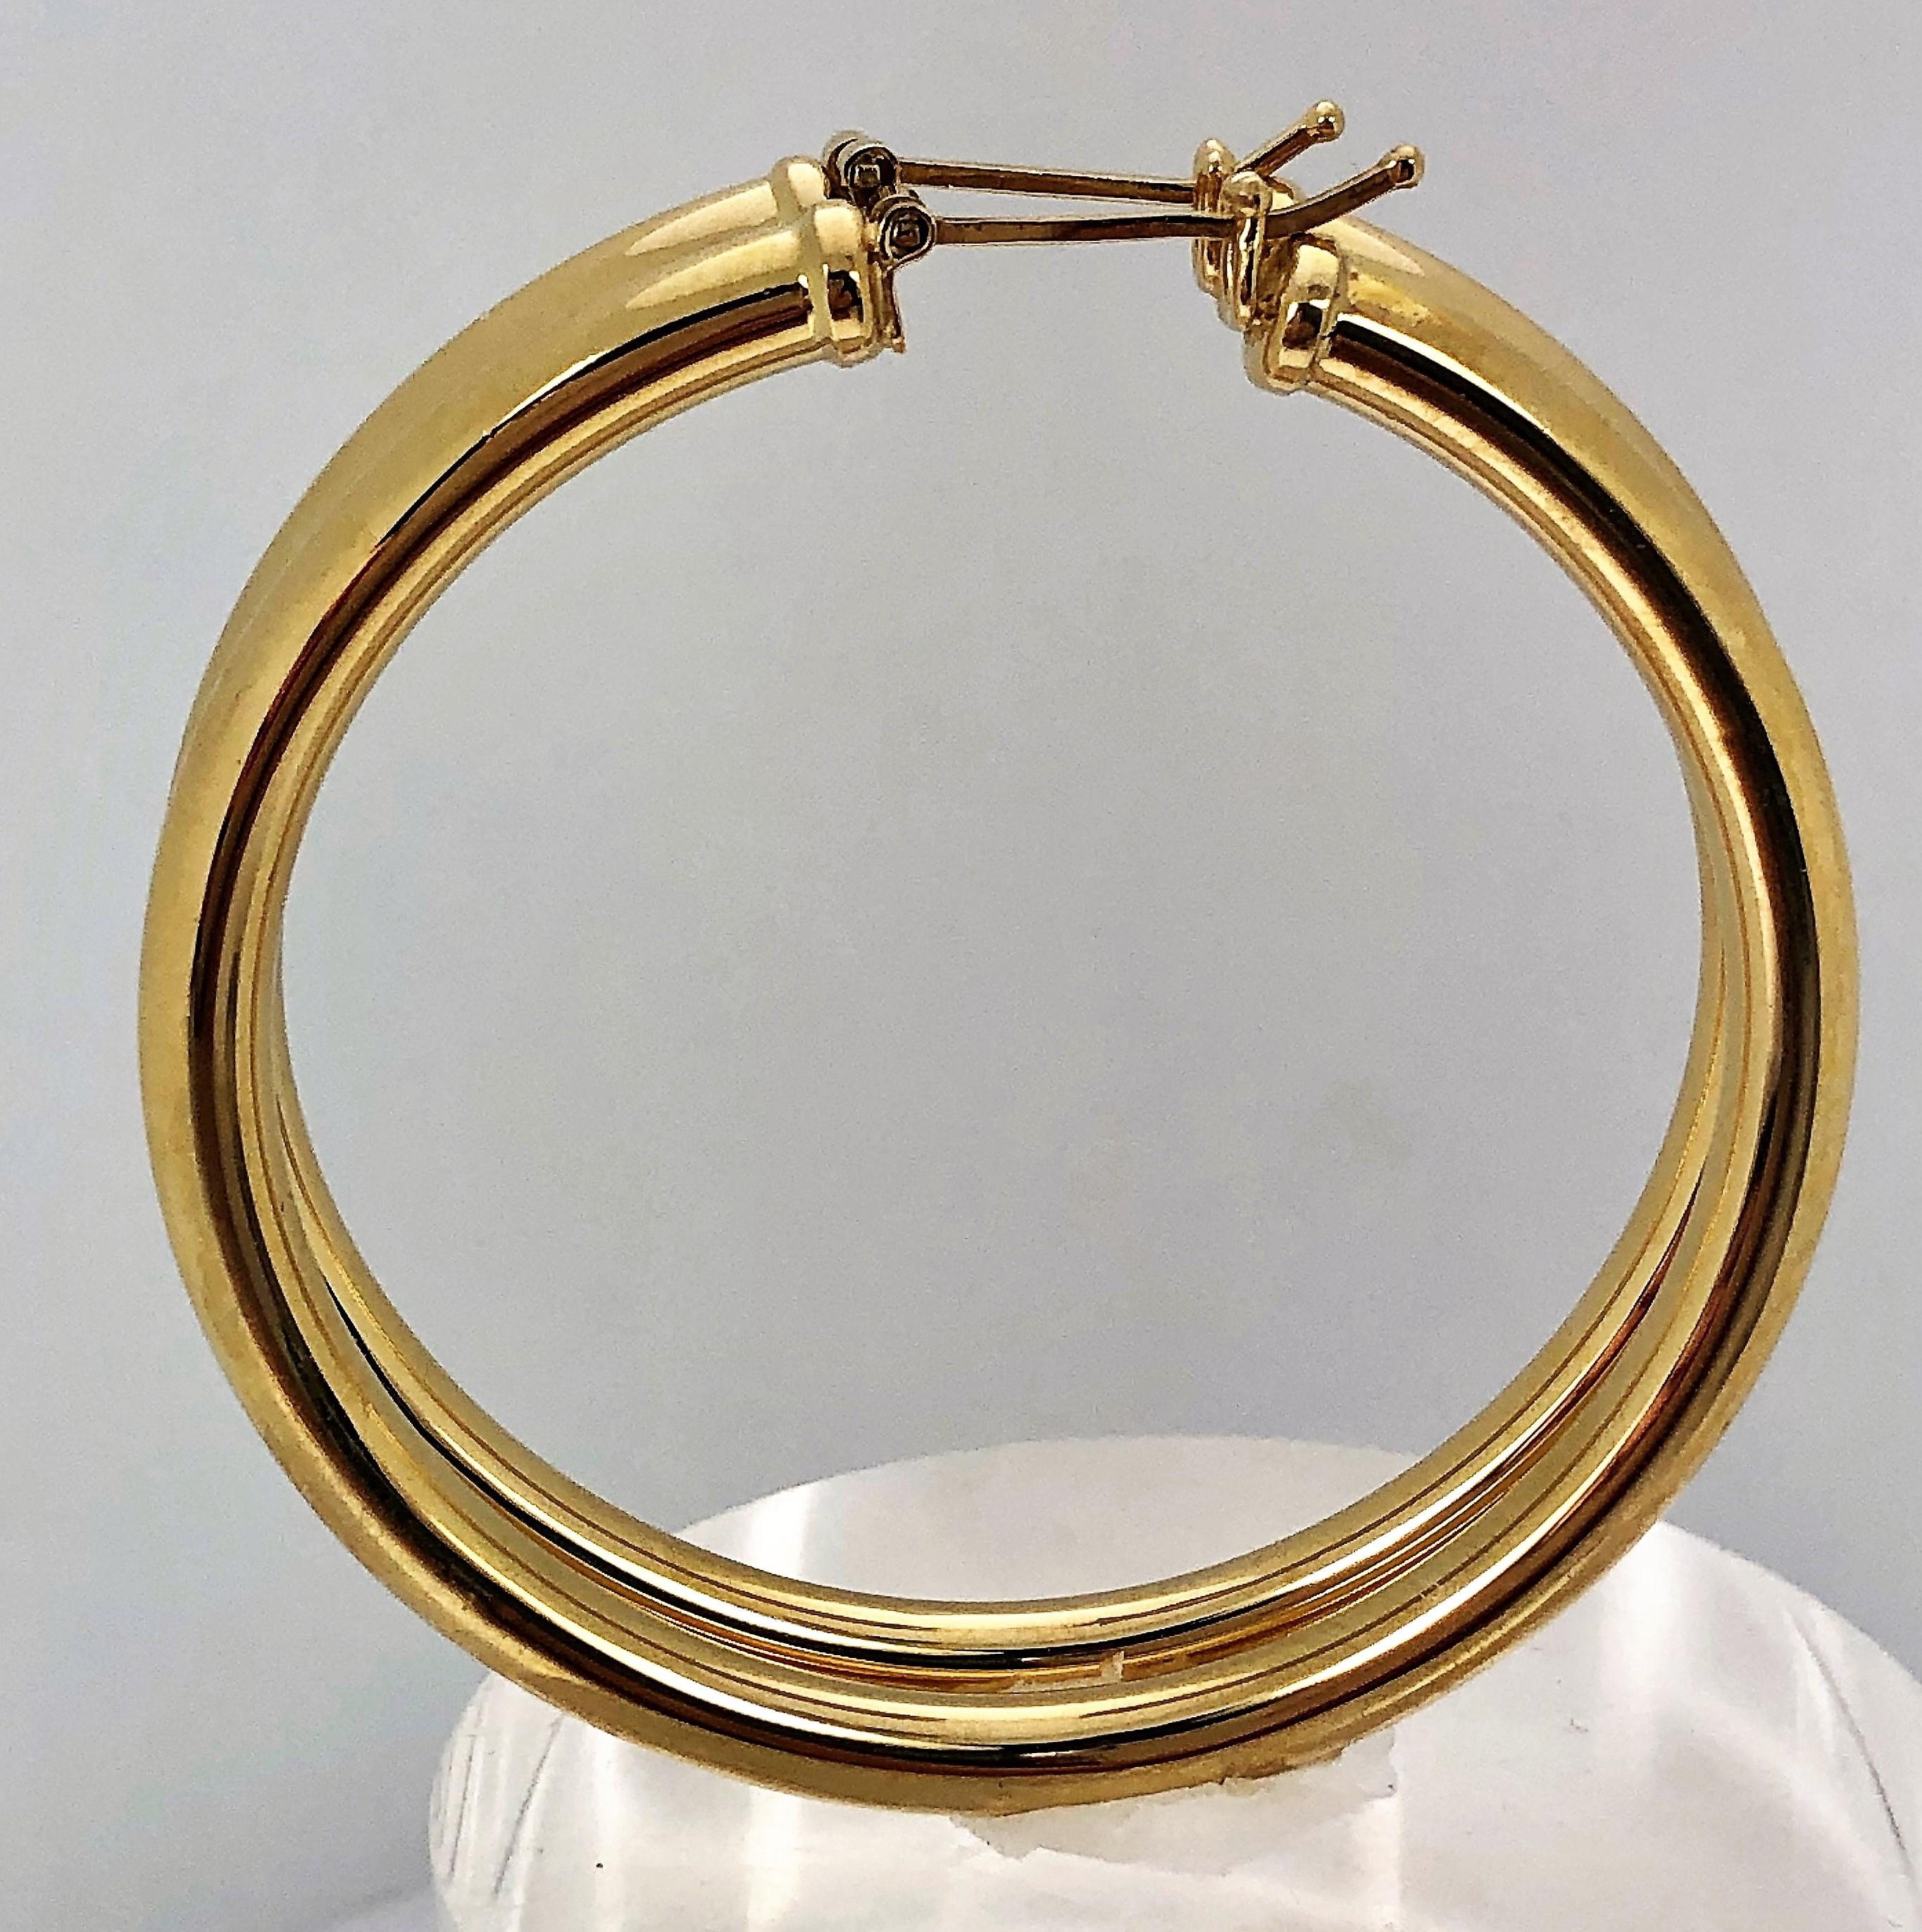 1 inch diameter hoop earrings